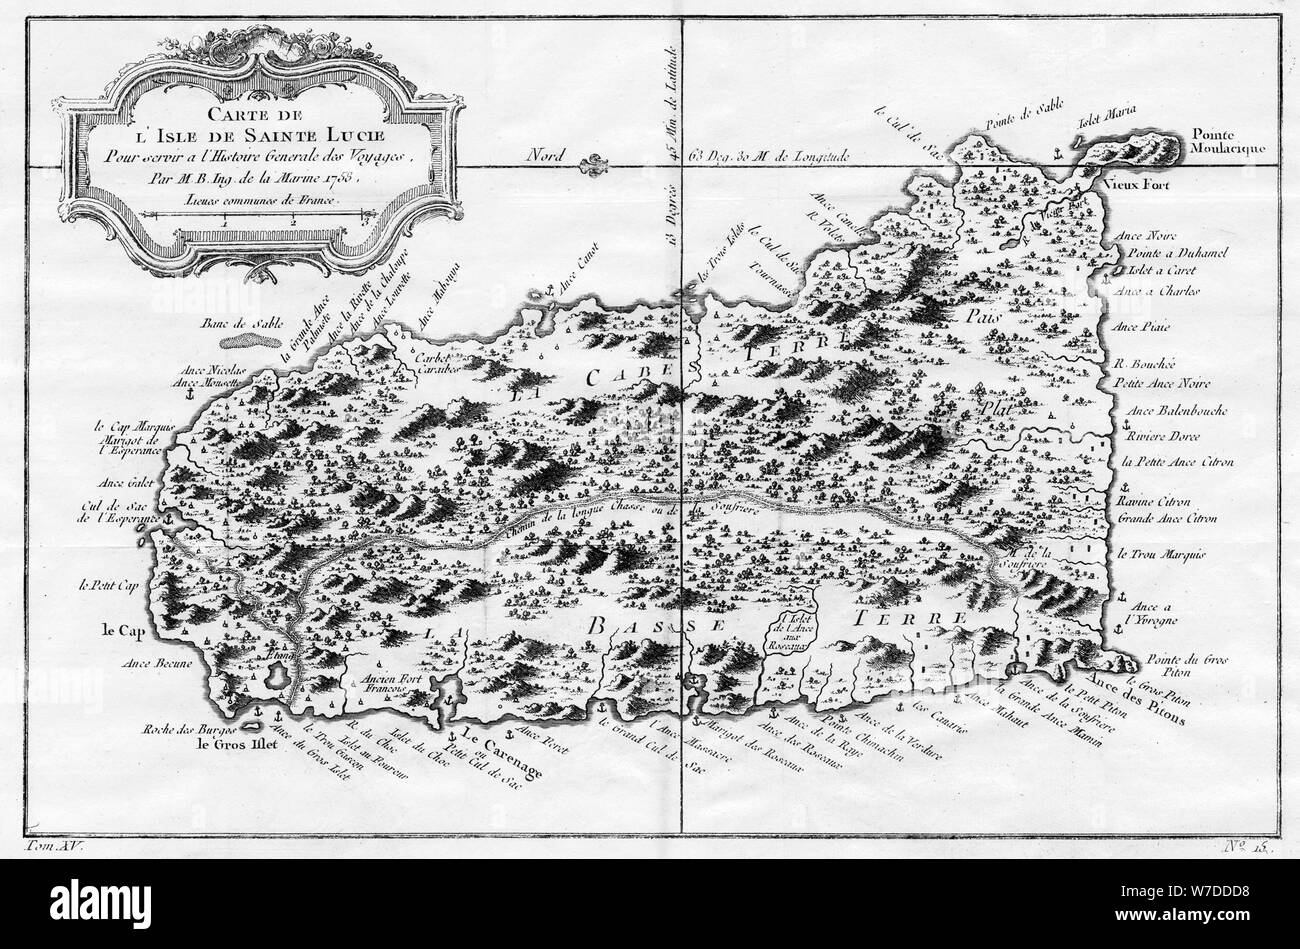 Una mappa di St Lucia, West Indies, 1758.Artista: N Bellun Foto Stock